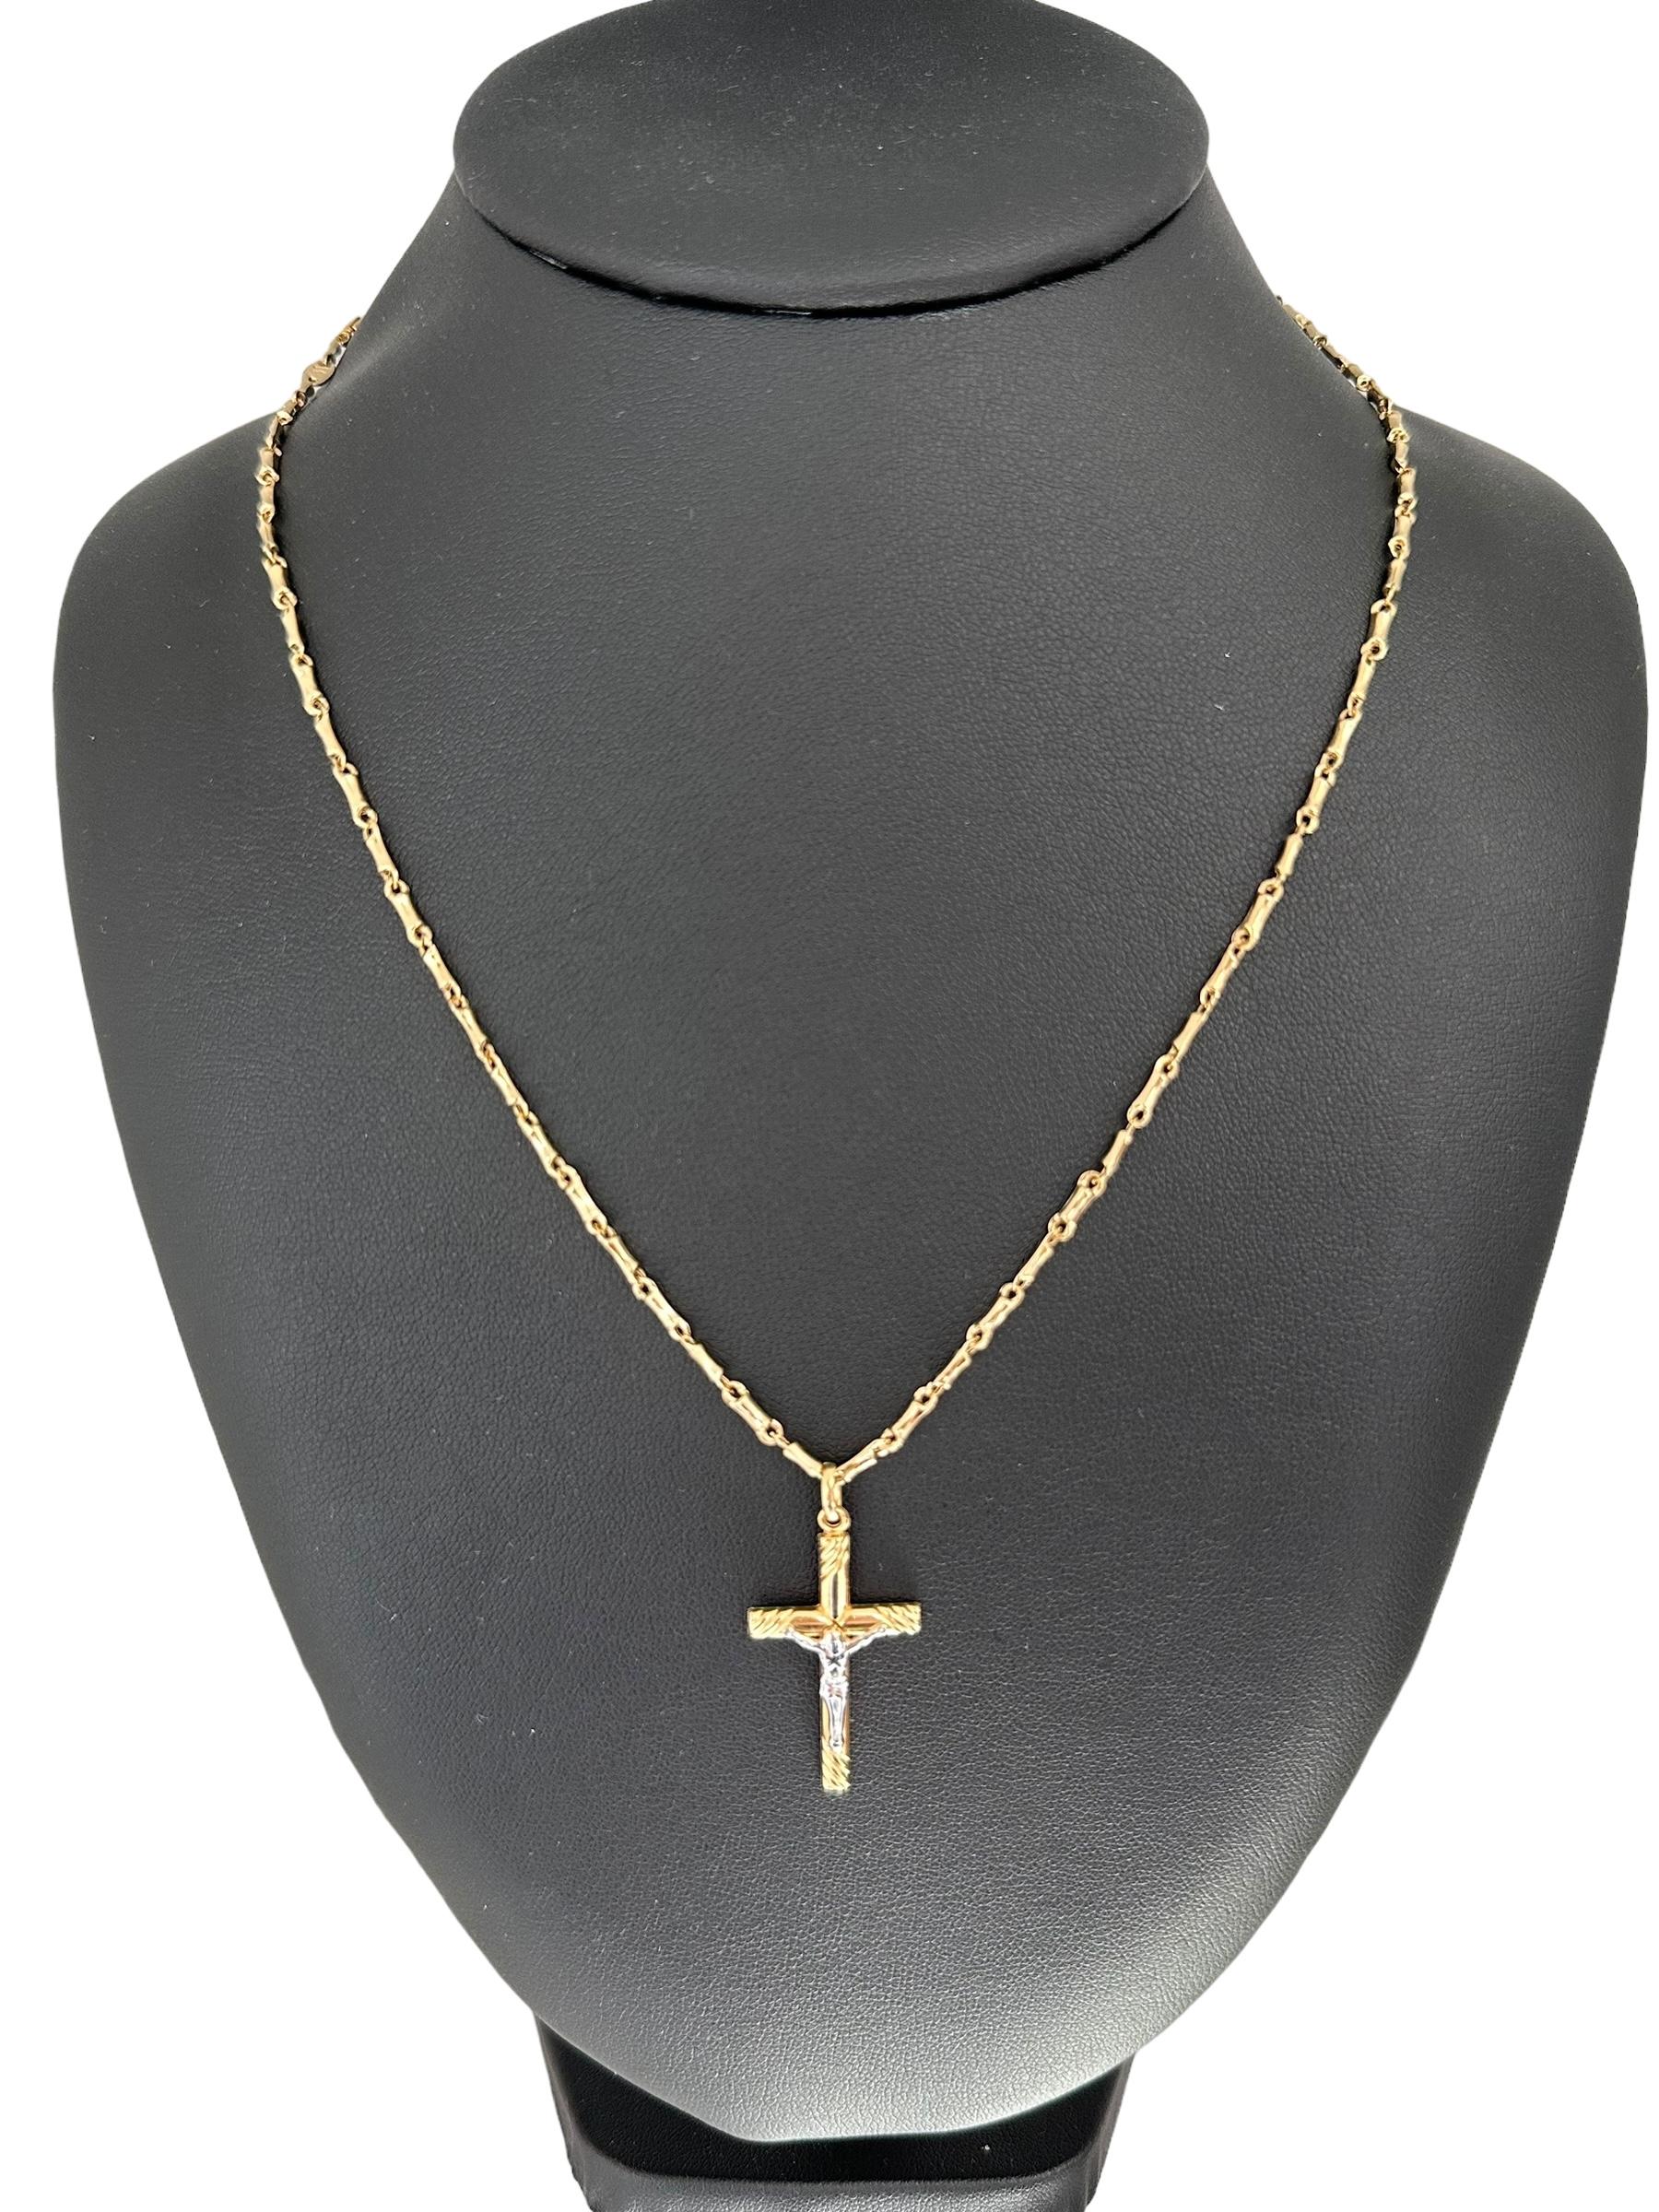 Ce crucifix italien en or avec chaîne à maillons en bambou est un bijou religieux magnifique et significatif. Fabriqué en or jaune 18 carats de haute qualité, le crucifix présente des détails complexes et une finition polie, soulignant son exquise